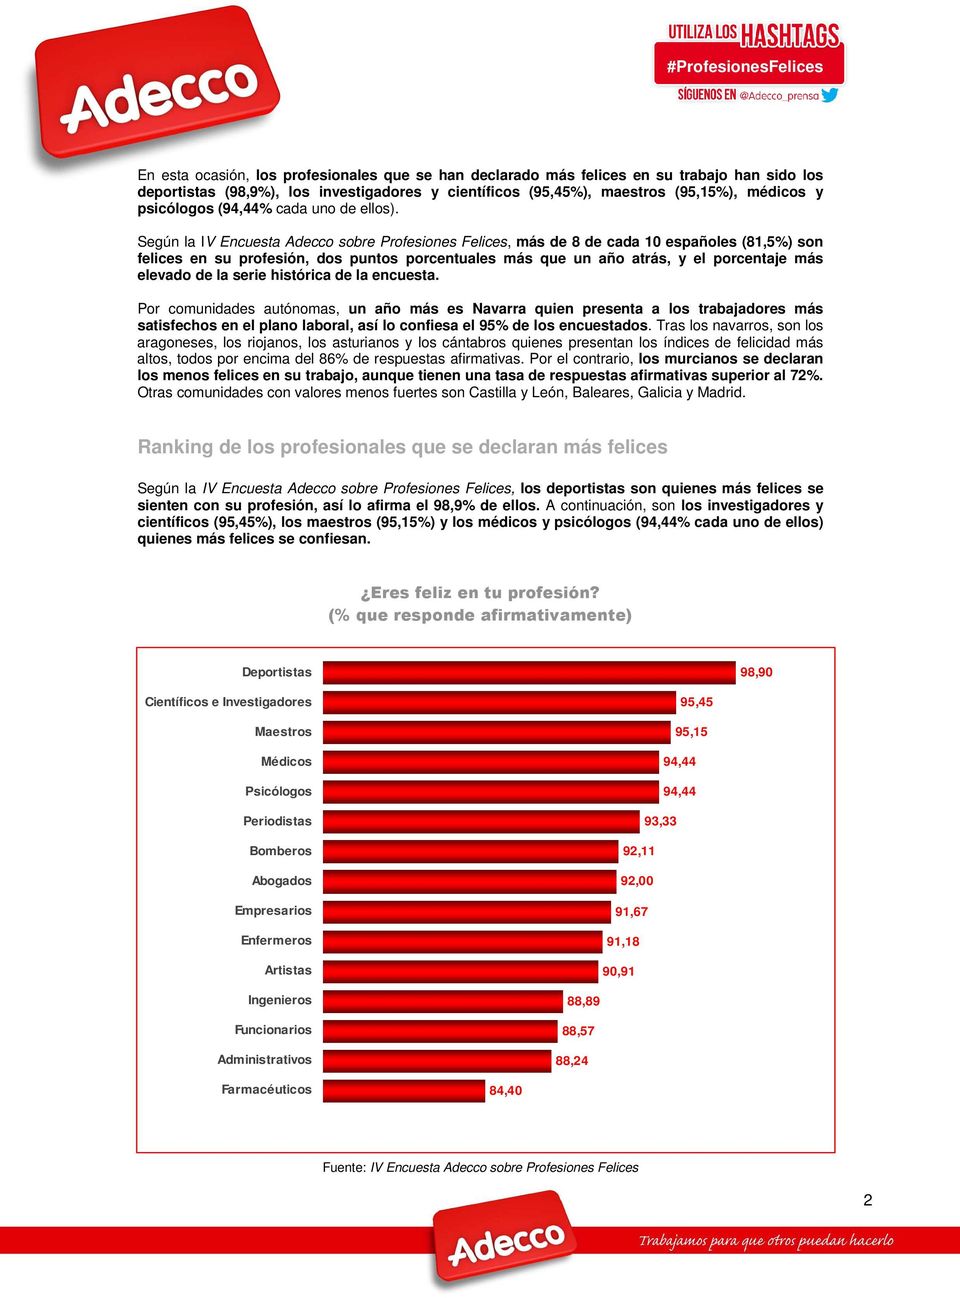 Según la IV Encuesta Adecco sobre Profesiones Felices, más de 8 de cada 10 españoles (81,5%) son felices en su profesión, dos puntos porcentuales más que un año atrás, y el porcentaje más elevado de